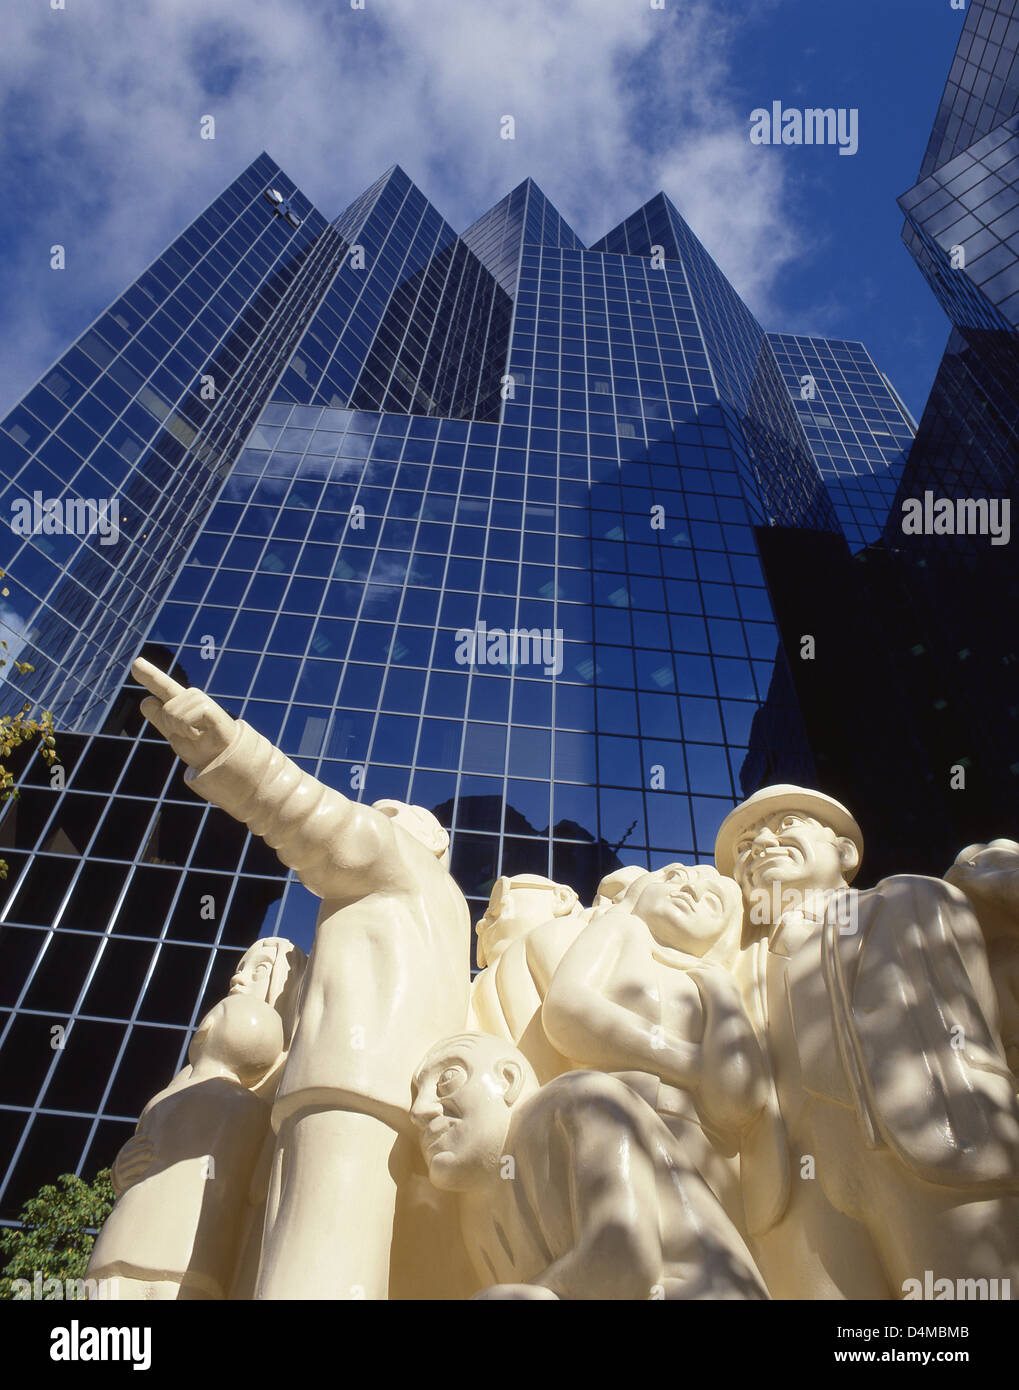 Banque Nationale de Paris "la sculpture la foule illuminée', dans le centre-ville de Montréal (Ville de Montréal), Québec, Canada Banque D'Images